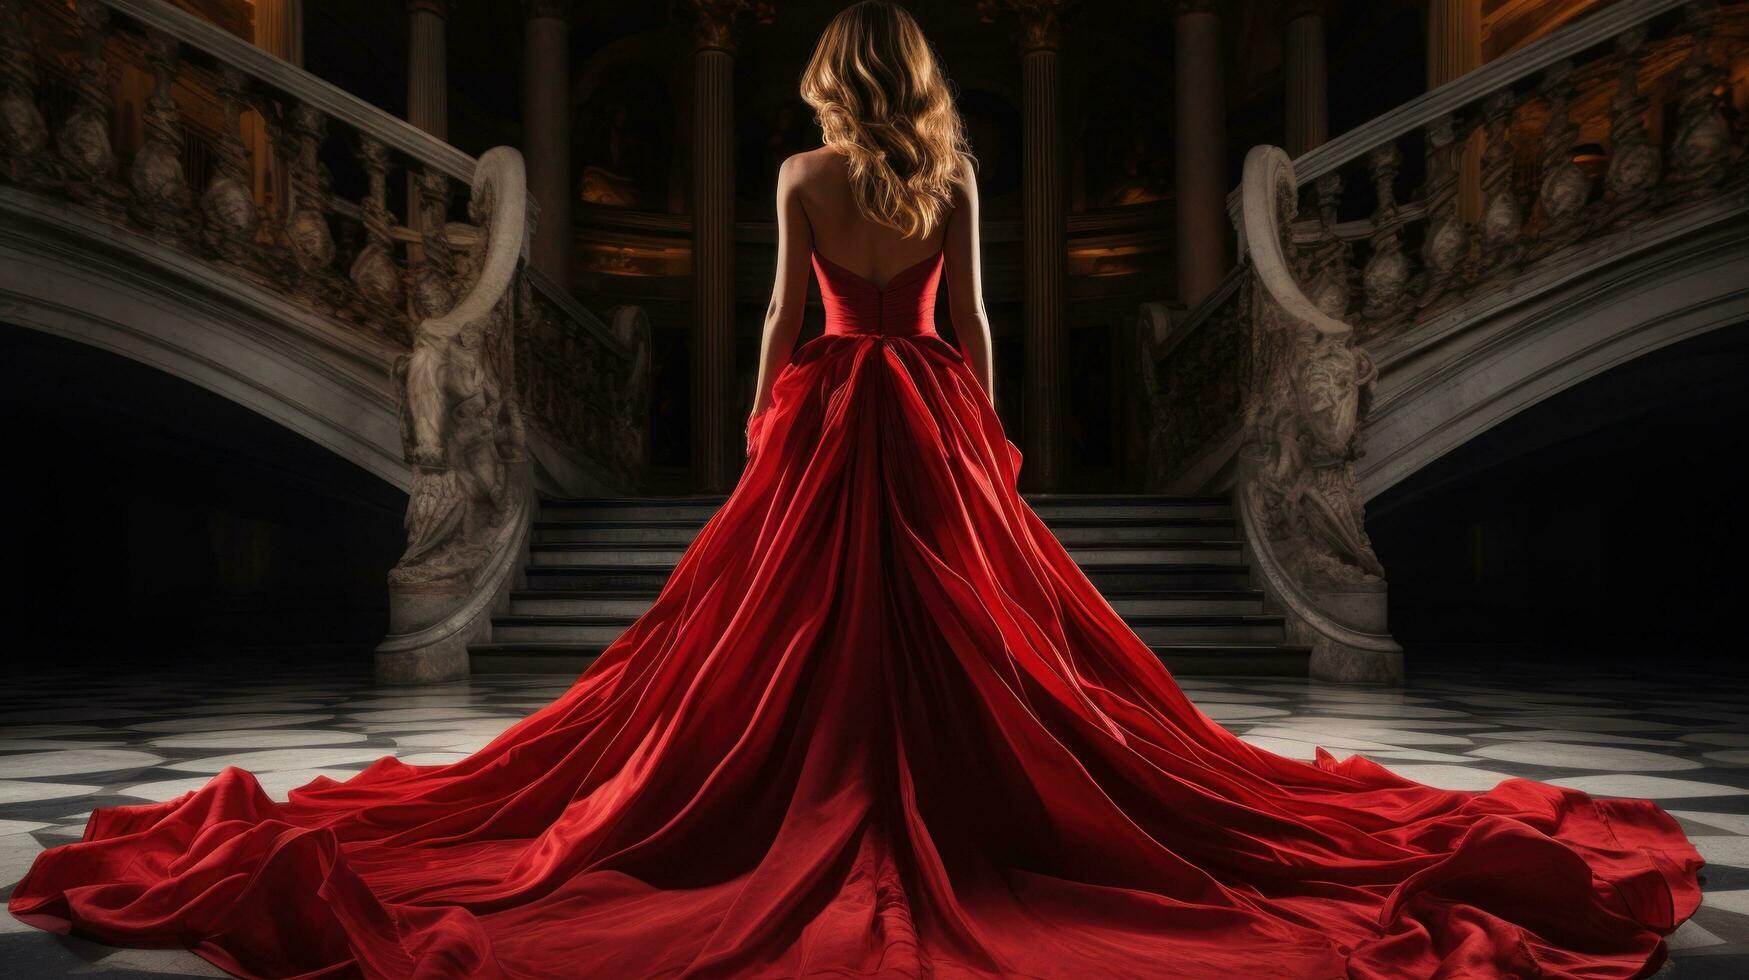 kvinna i elegant röd klänning med tåg foto